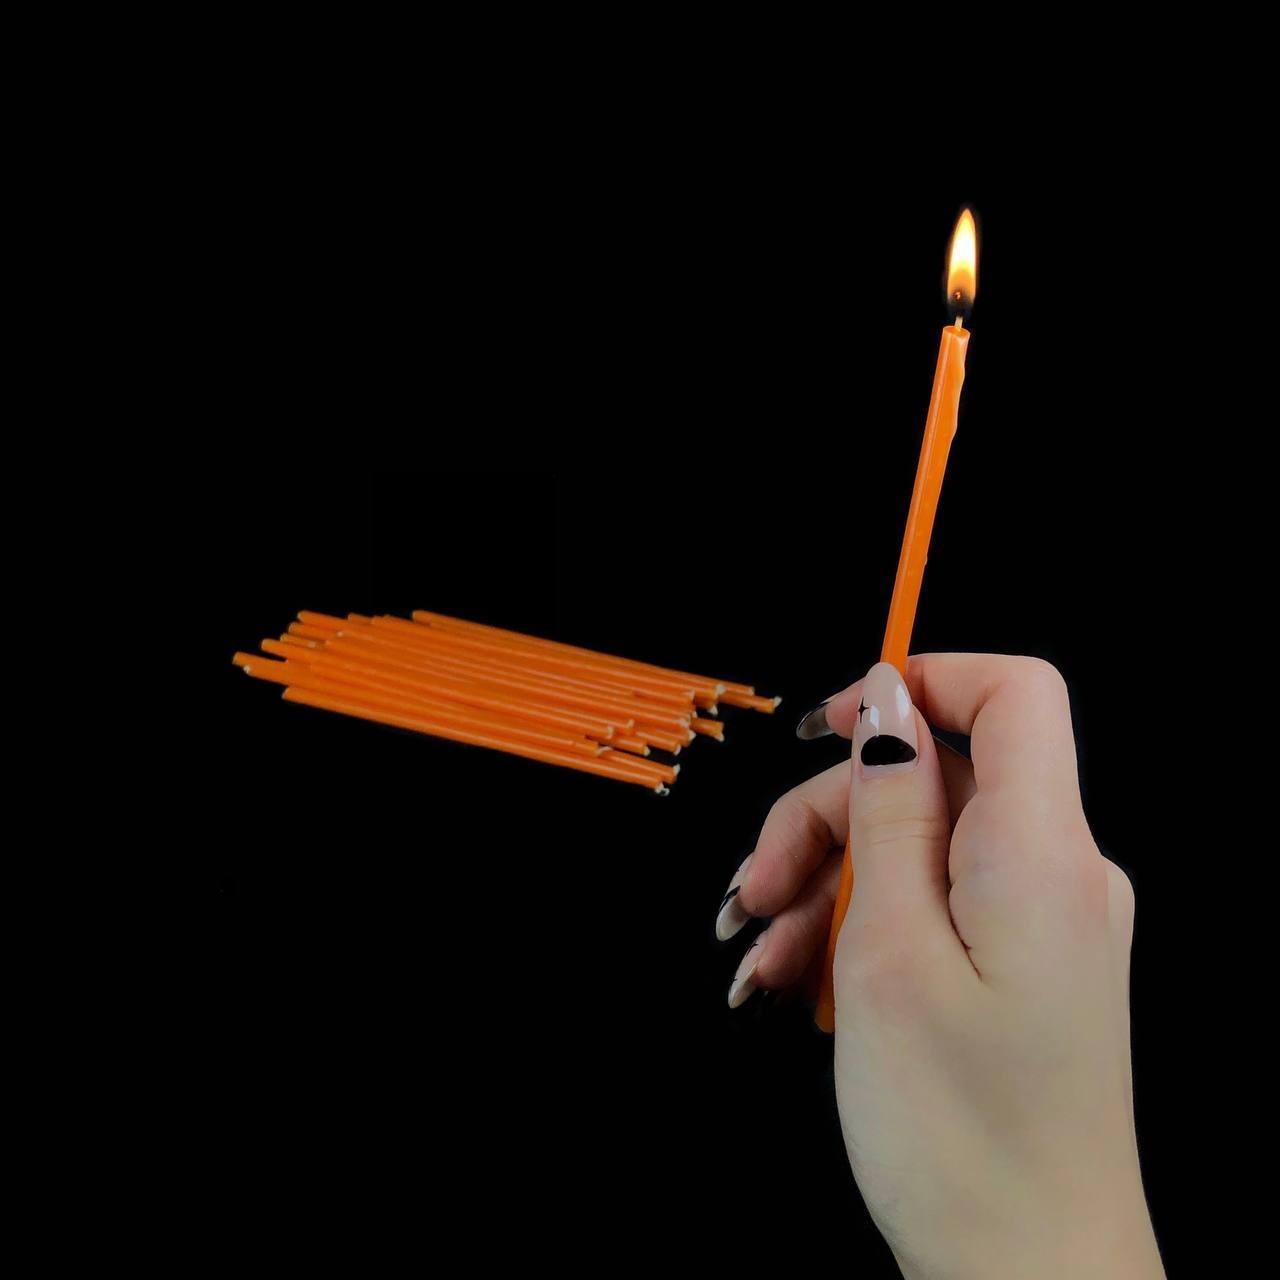 Свеча восковая оранжевая 15 см